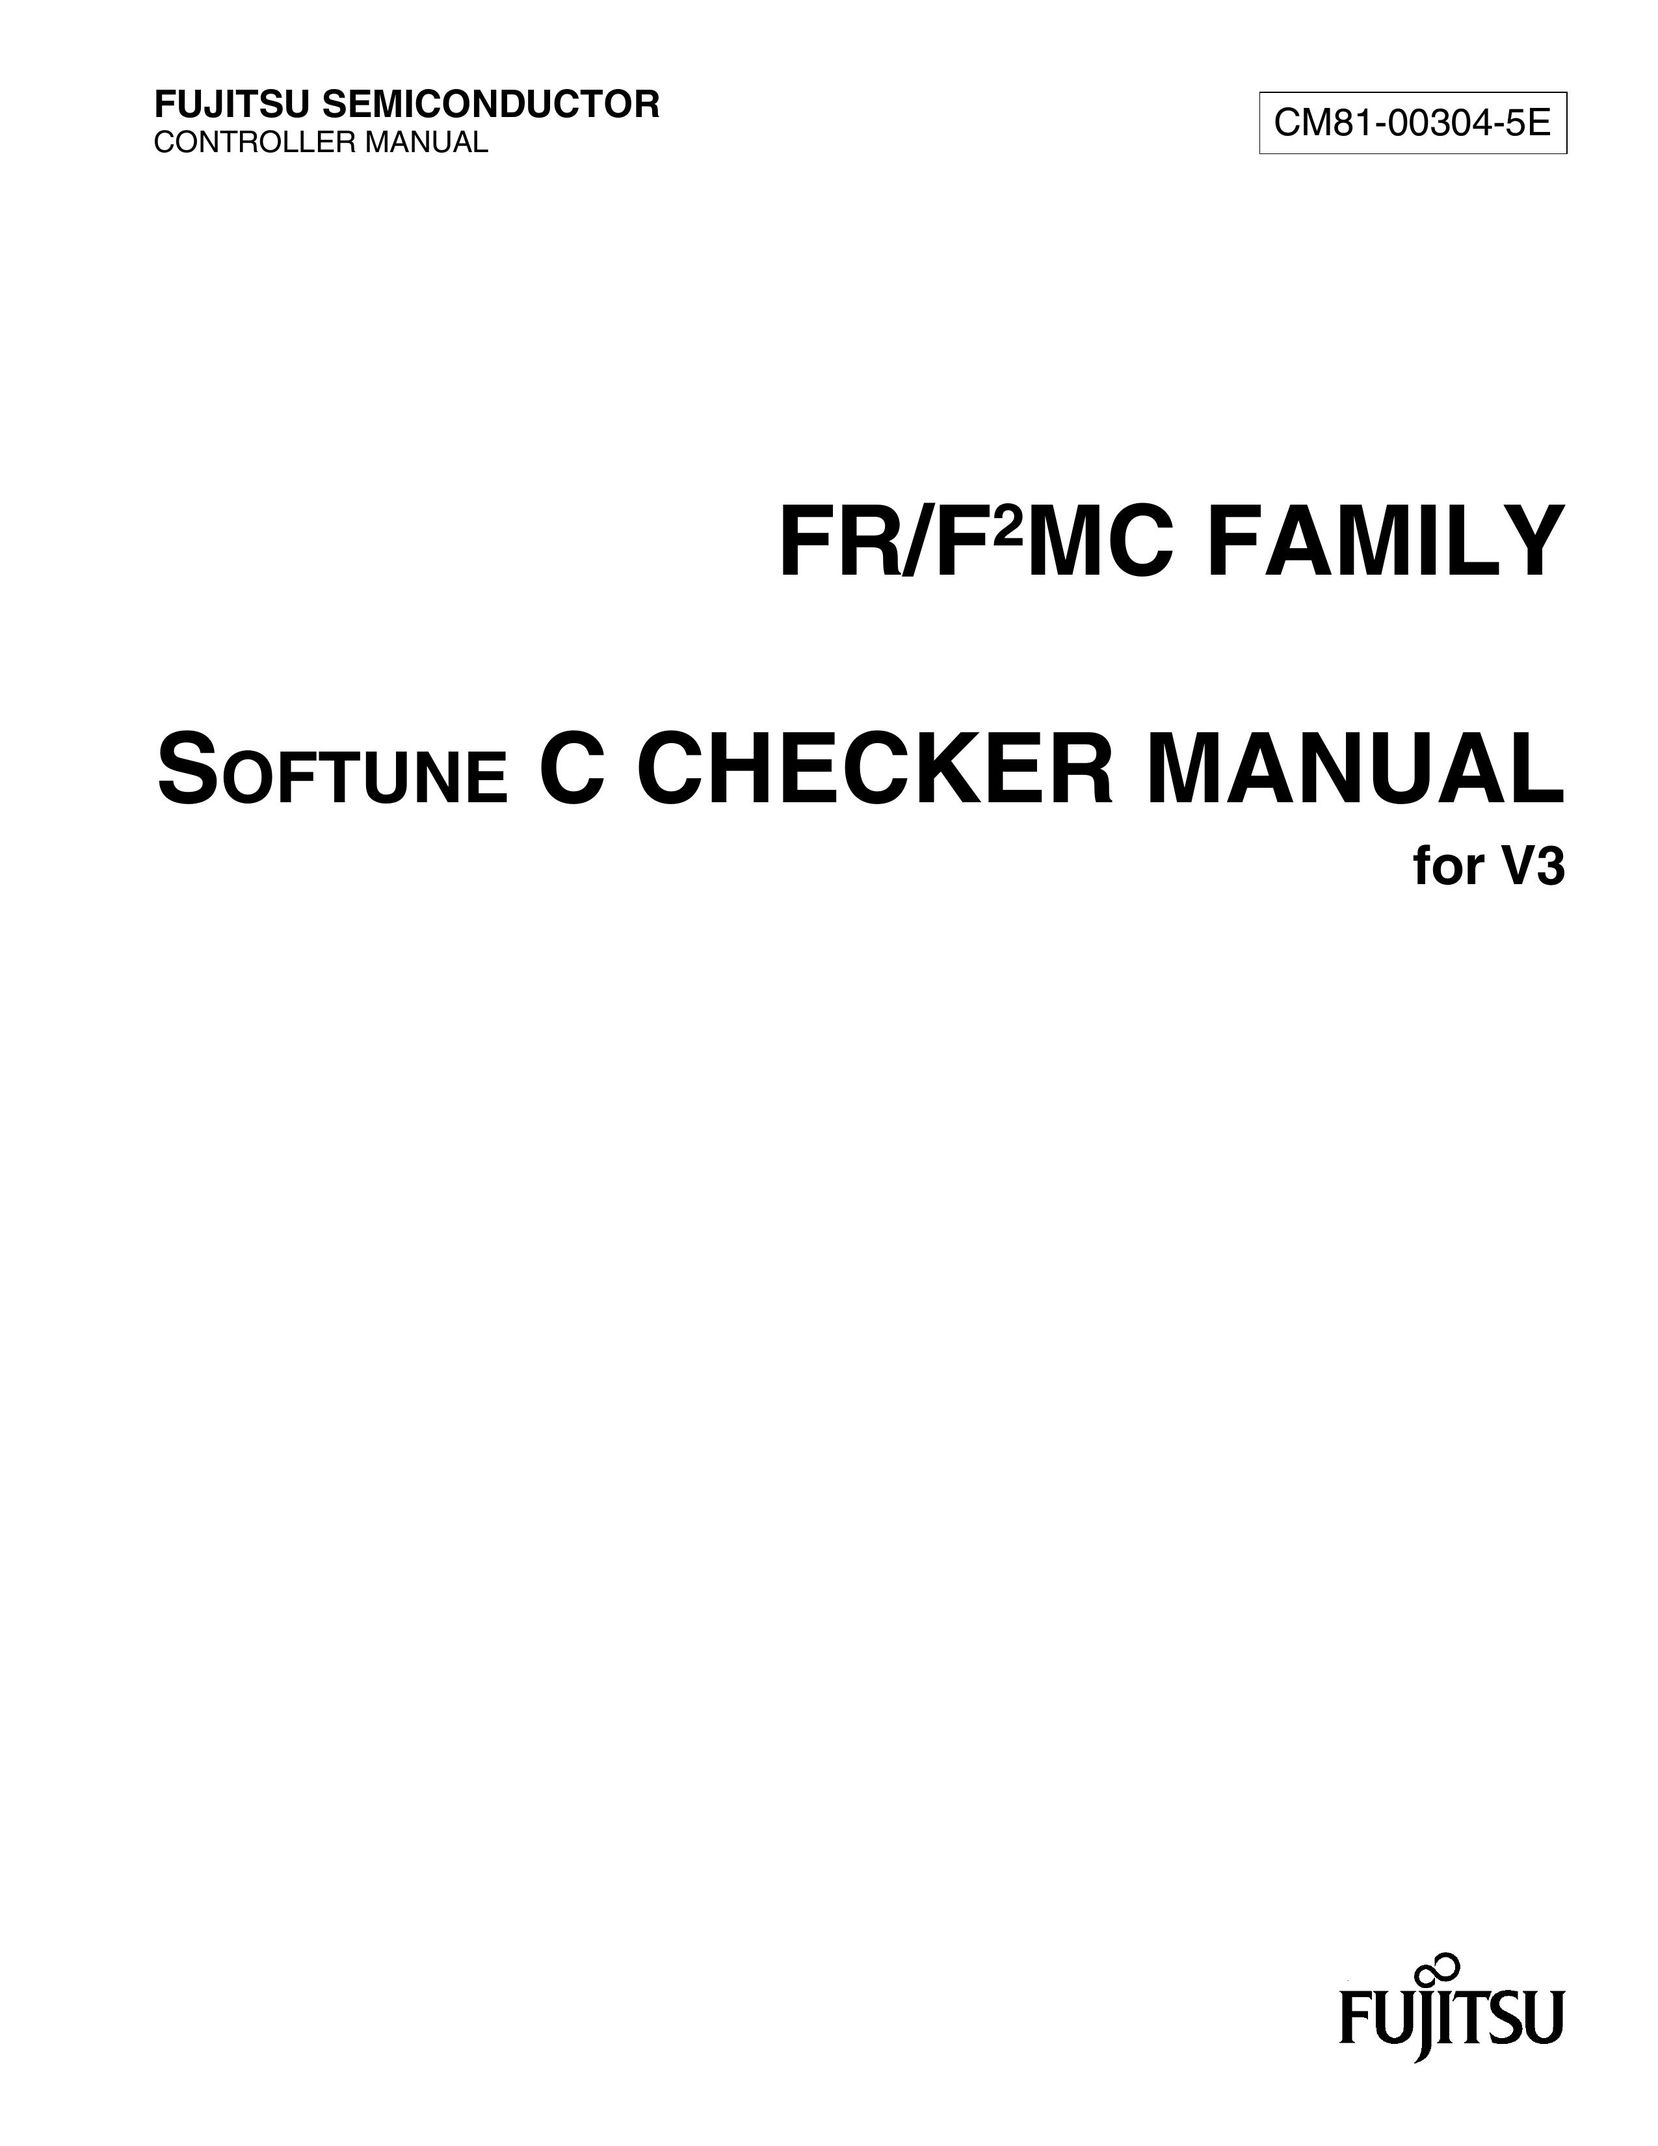 Fujitsu CM81-00304-5E Dollhouse User Manual